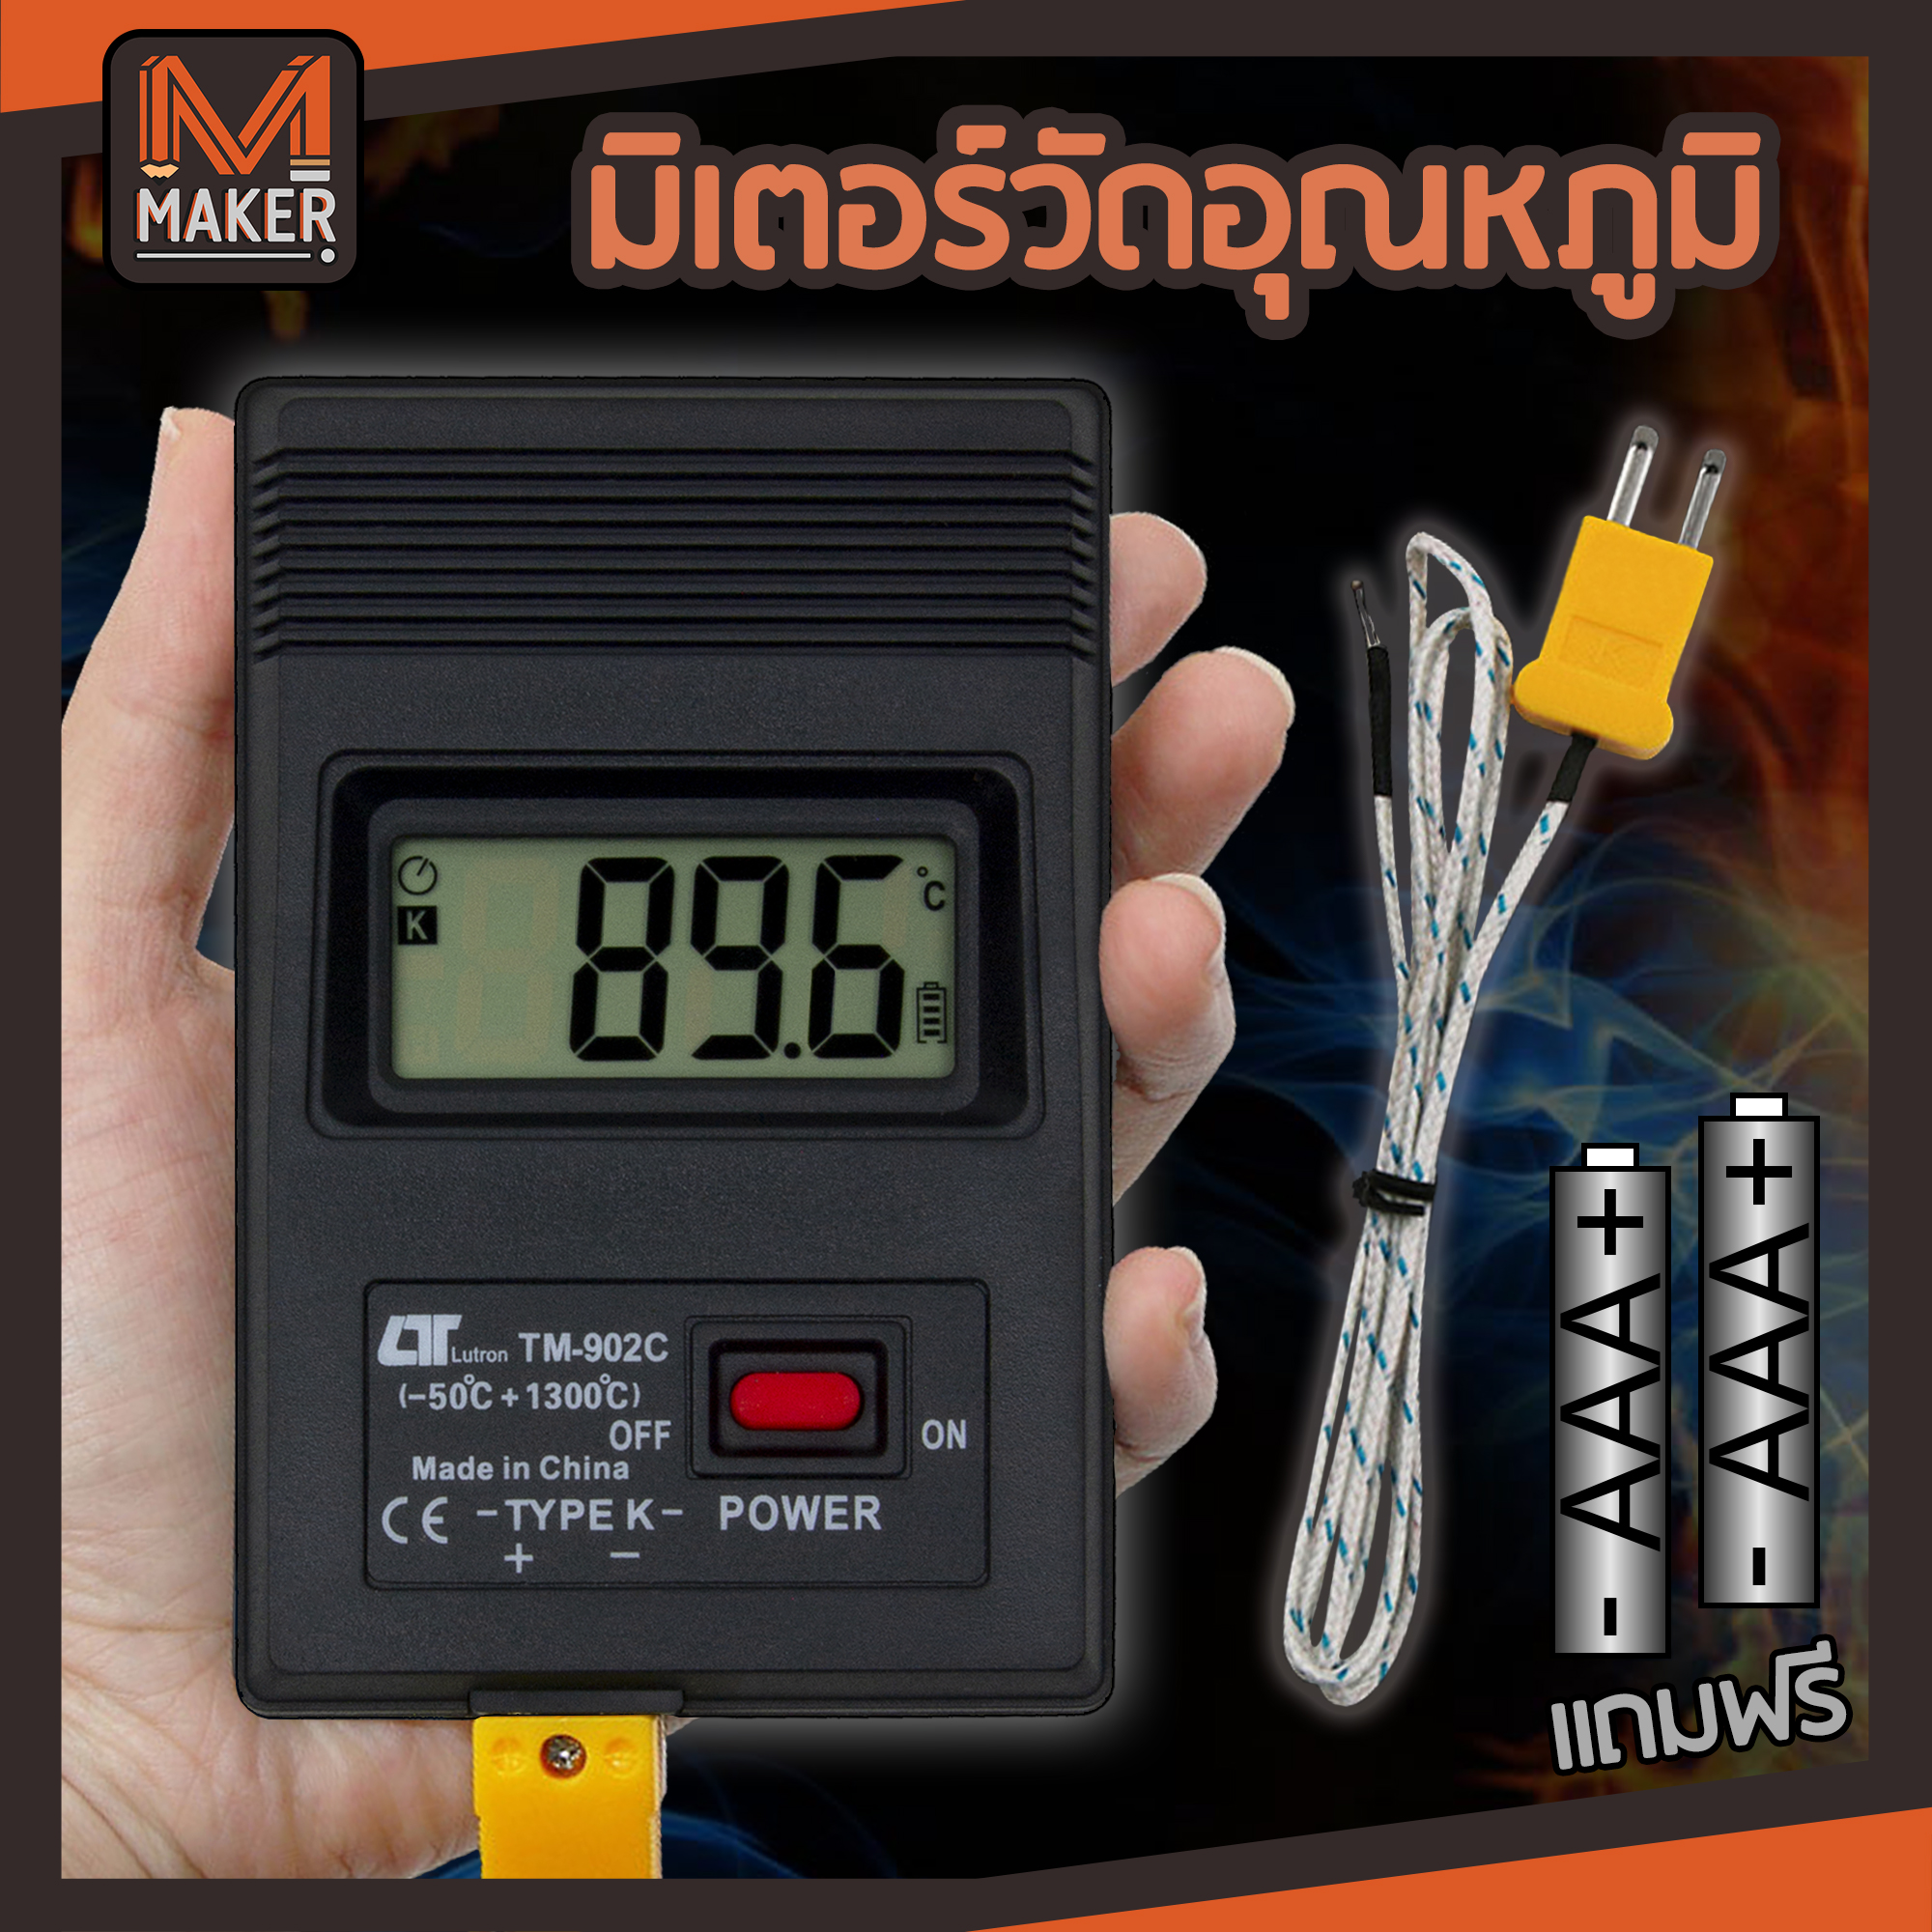 เครื่องวัดอุณหภูมิ ดิจิตอล เทอร์โมมิเตอร์ Thermometer Digital Type K Thermocouple TM-902C มิเตอร์วัดอุณหภูมิ แม่นยำ ใช้ได้กับเทอร์โมคัพเปิล Type-k ทุกรูปแบบ